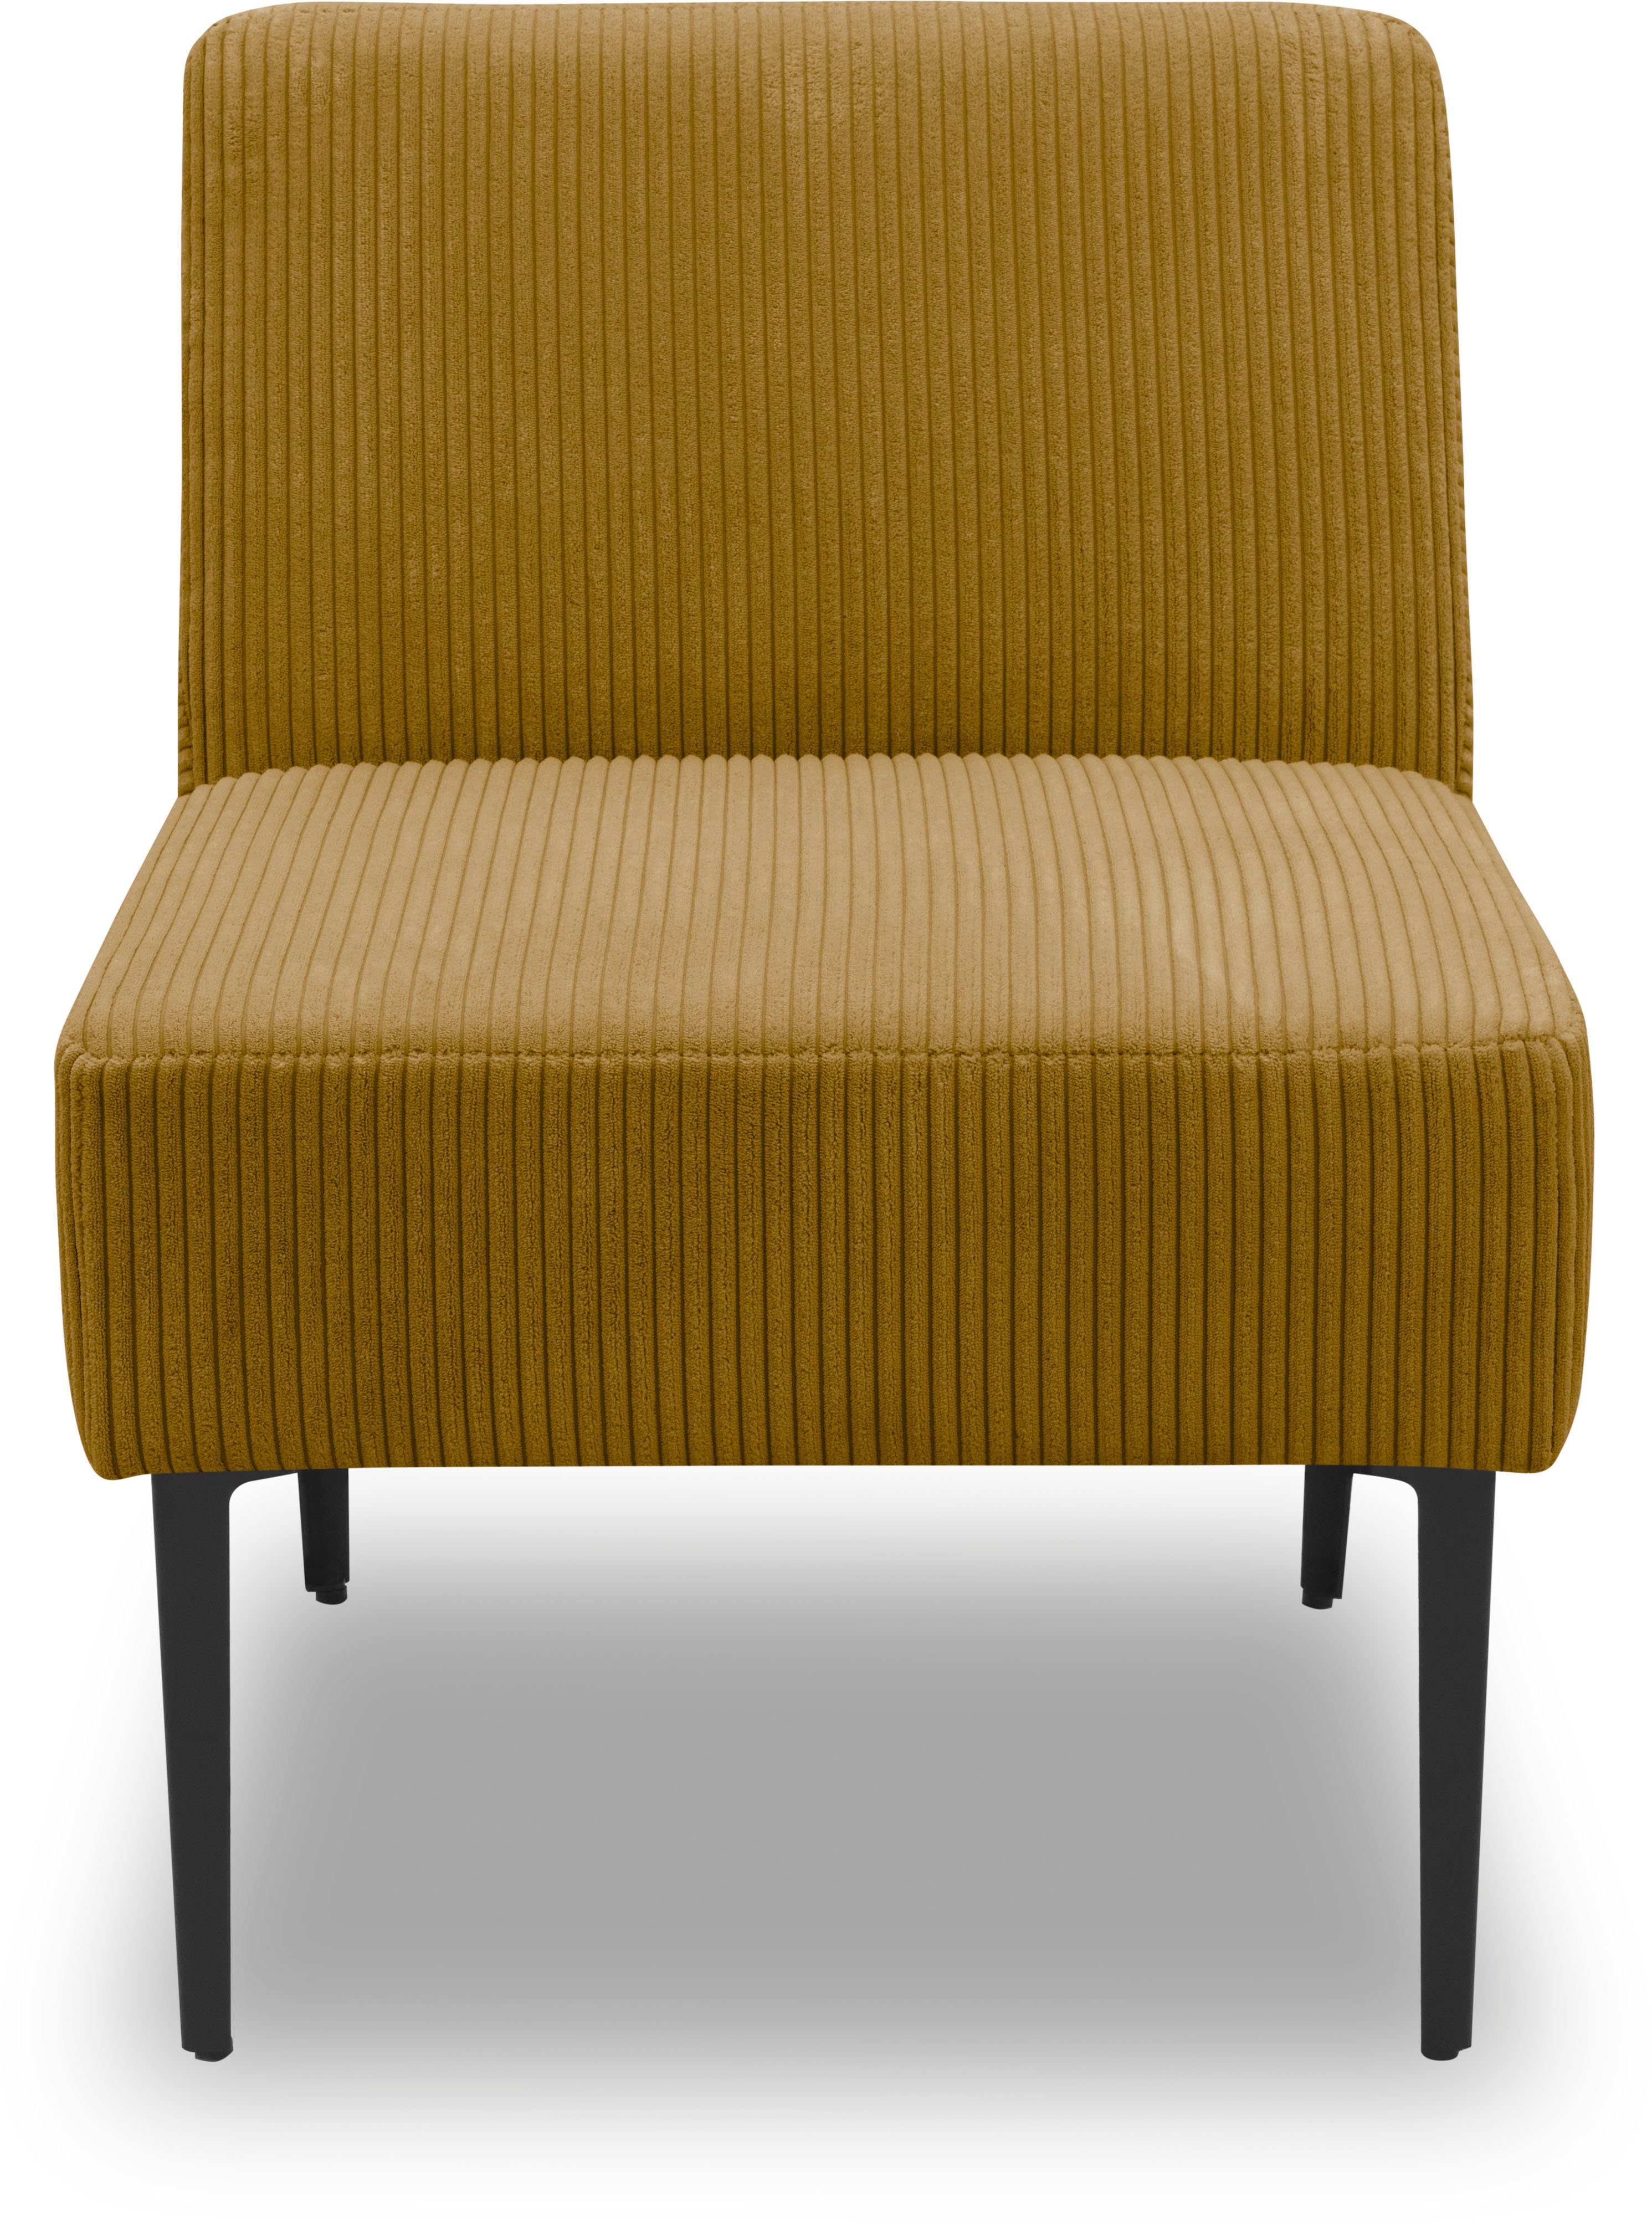 DOMO collection Sessel 700010, für individuelle Zusammenstellung eines persönlichen Sofas gold/curry